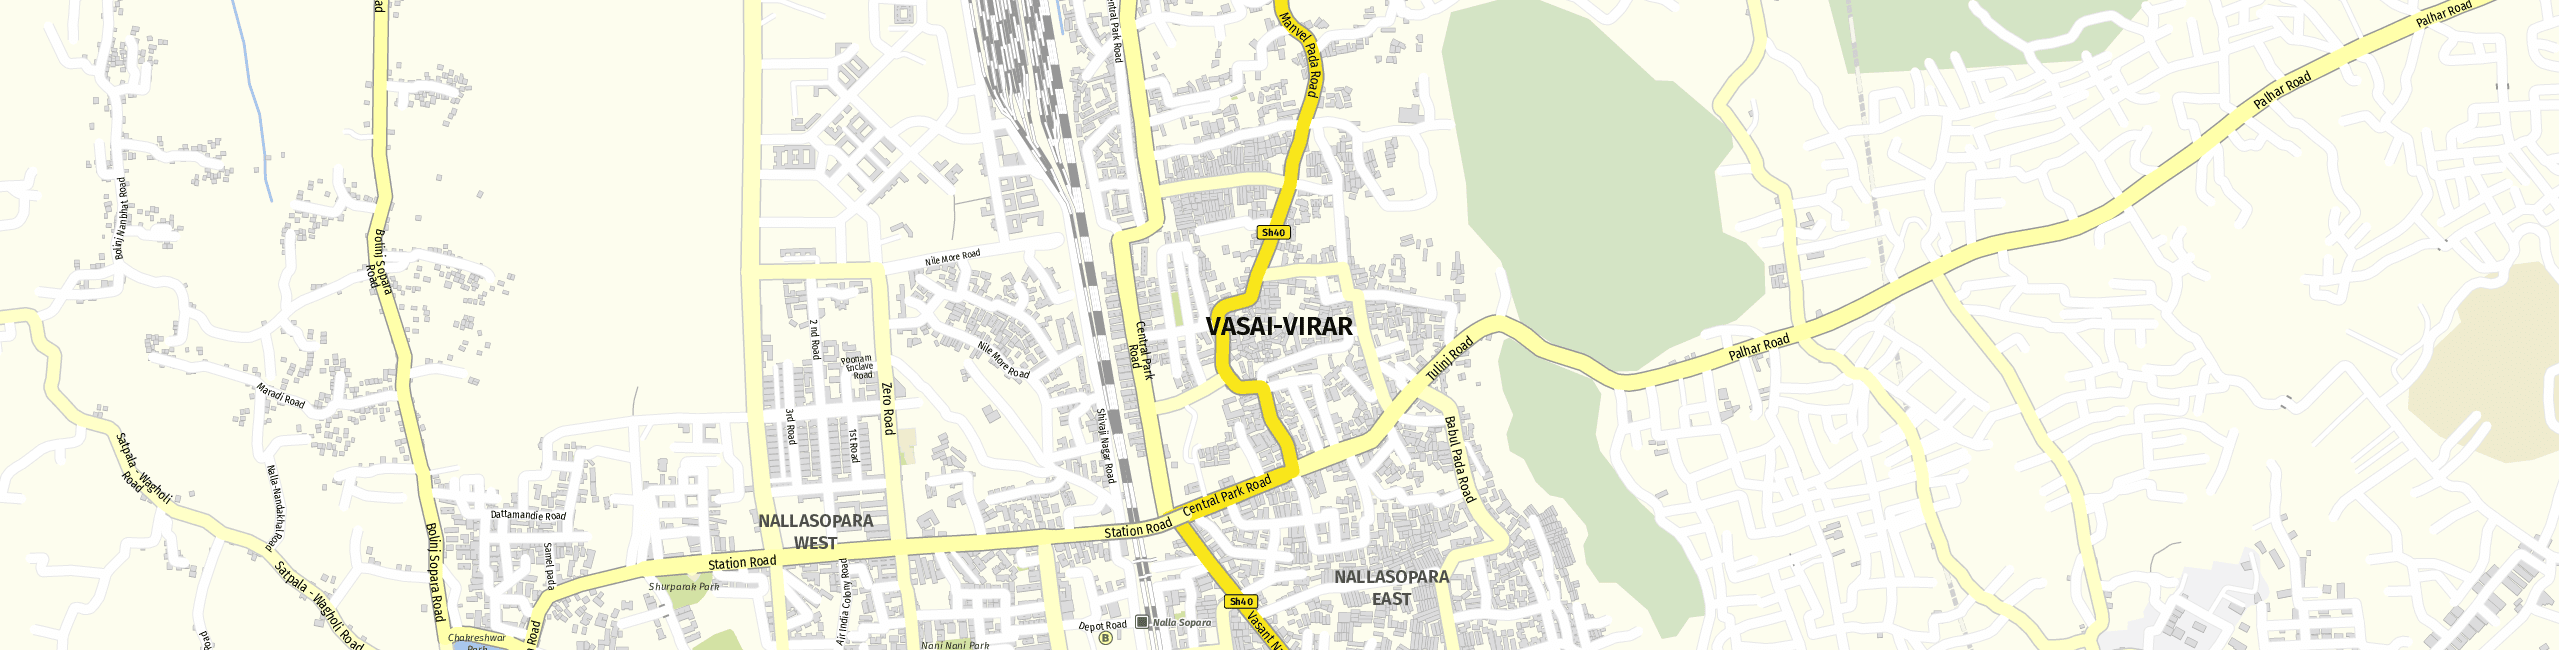 Stadtplan Vasai-Virar zum Downloaden.